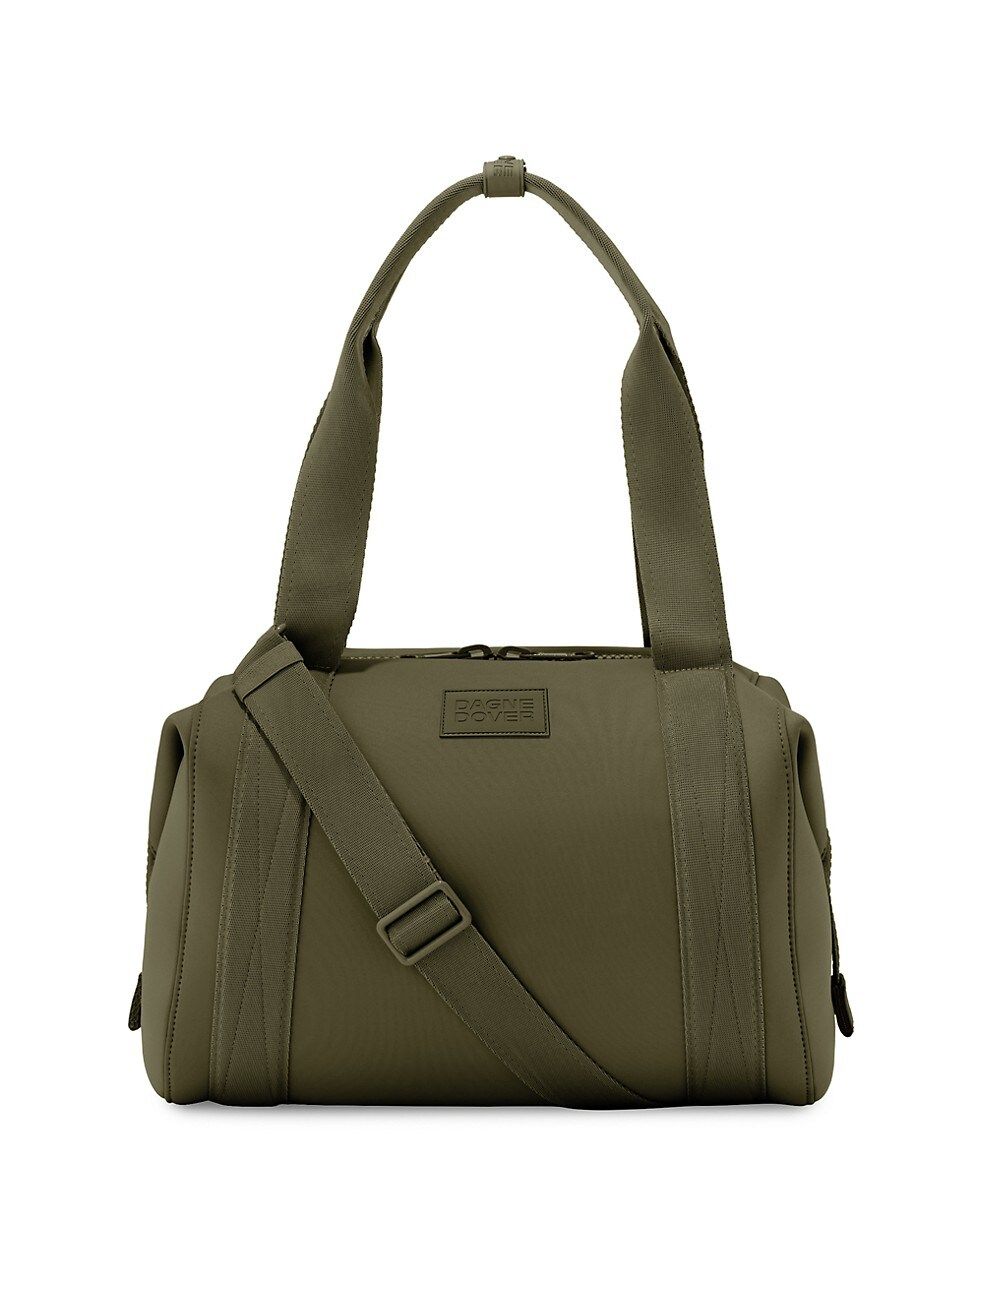 Dagne Dover Medium Landon Neoprene Carryall Bag | Saks Fifth Avenue